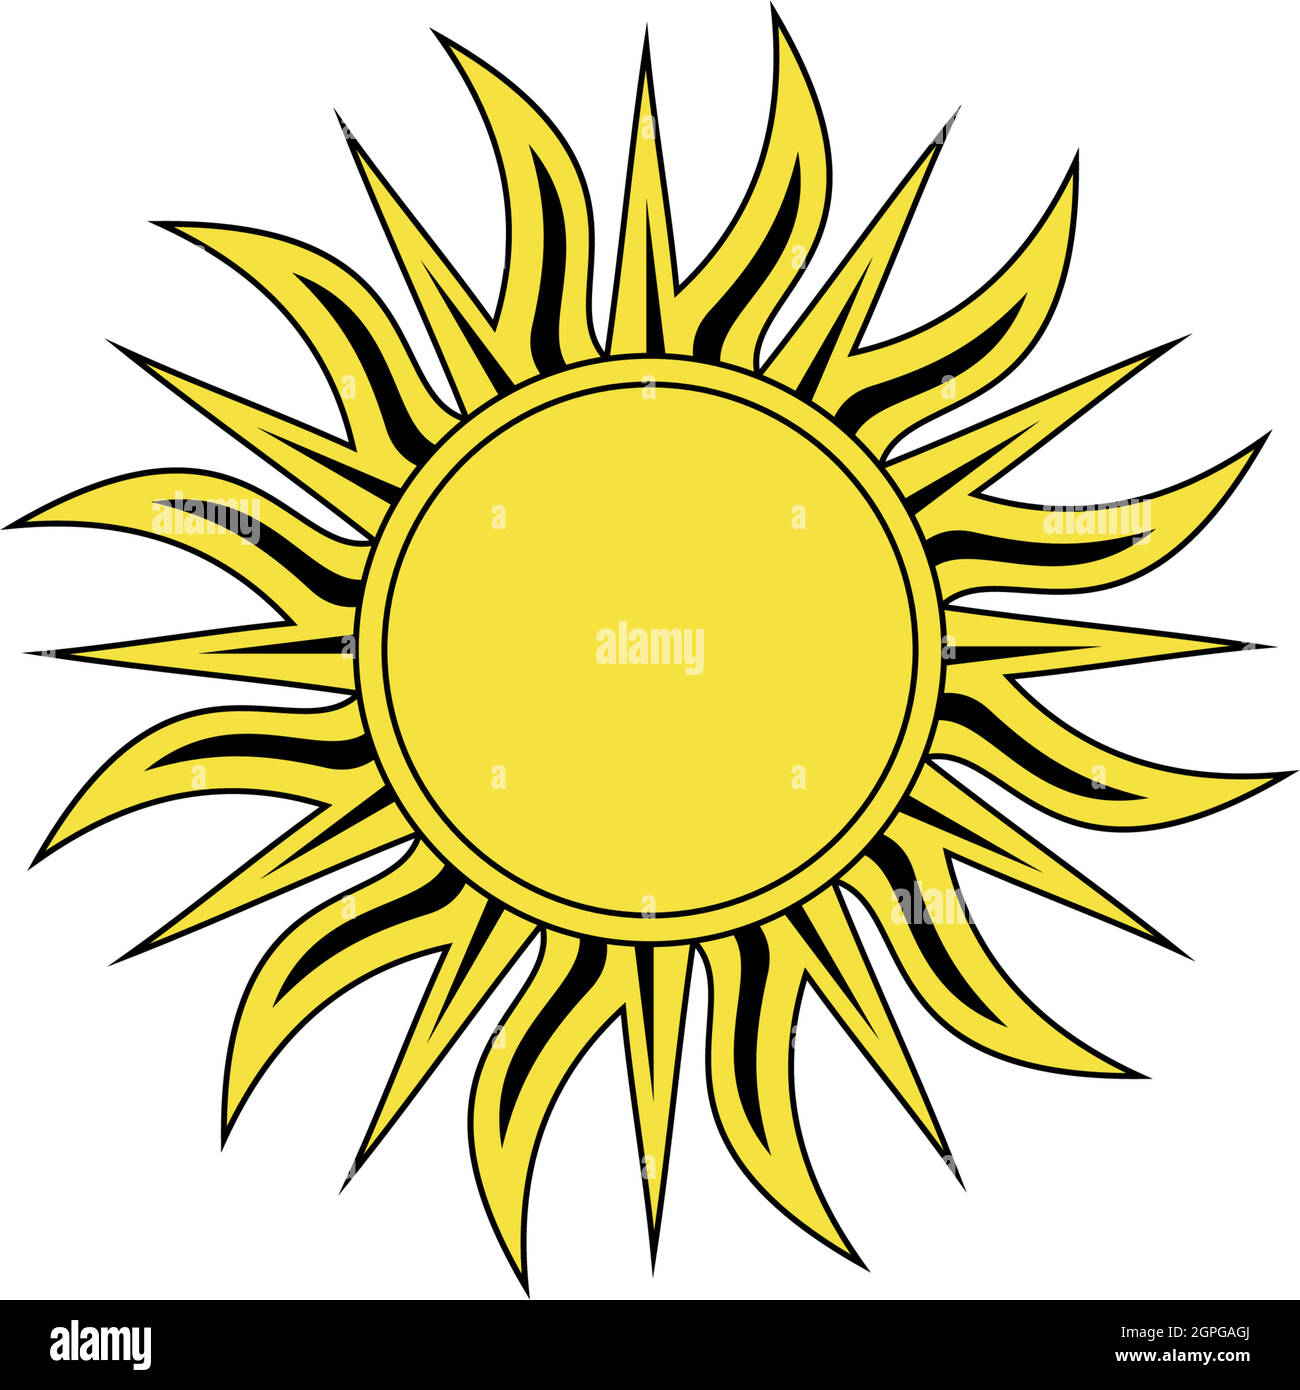 Symbolvektor Sonne oder Sonnenschein auf weißem, isoliertem Hintergrund. Stock Vektor